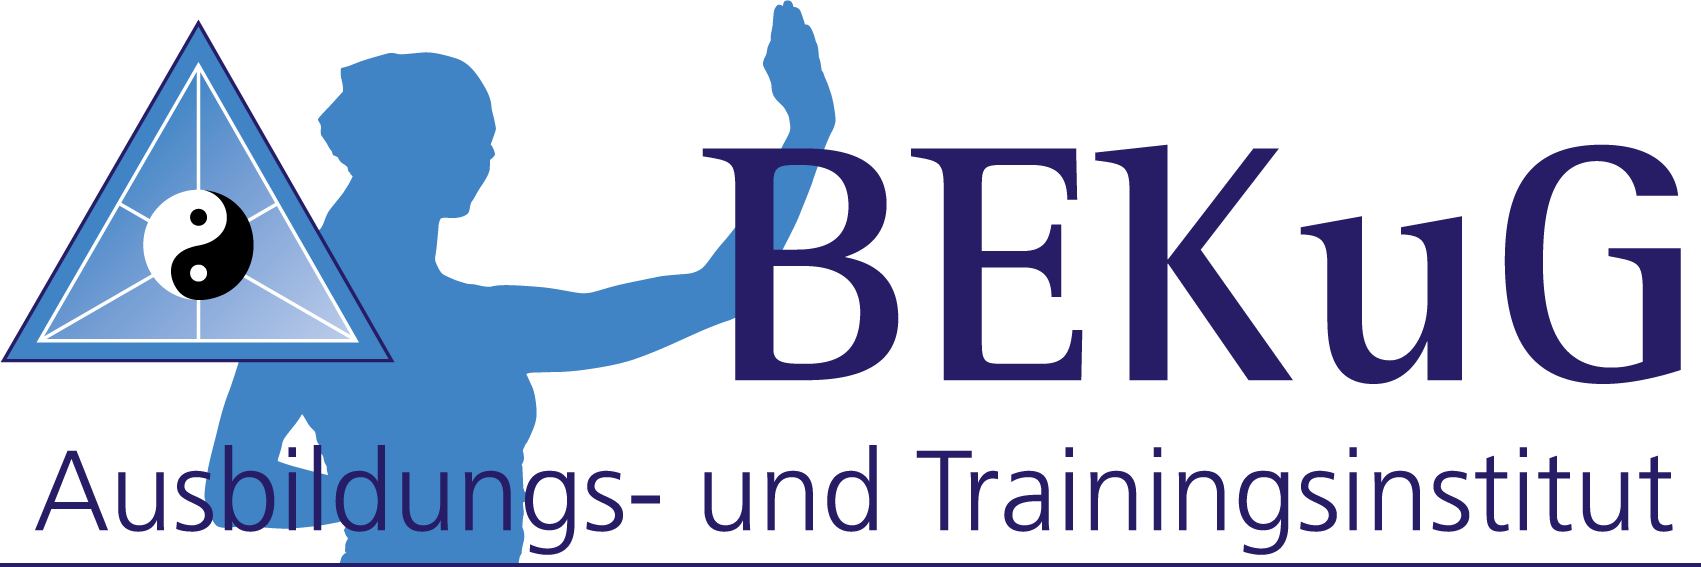 Selbstverteidigung - BEKuG Ausbildungs- und Trainigsinstitut logo